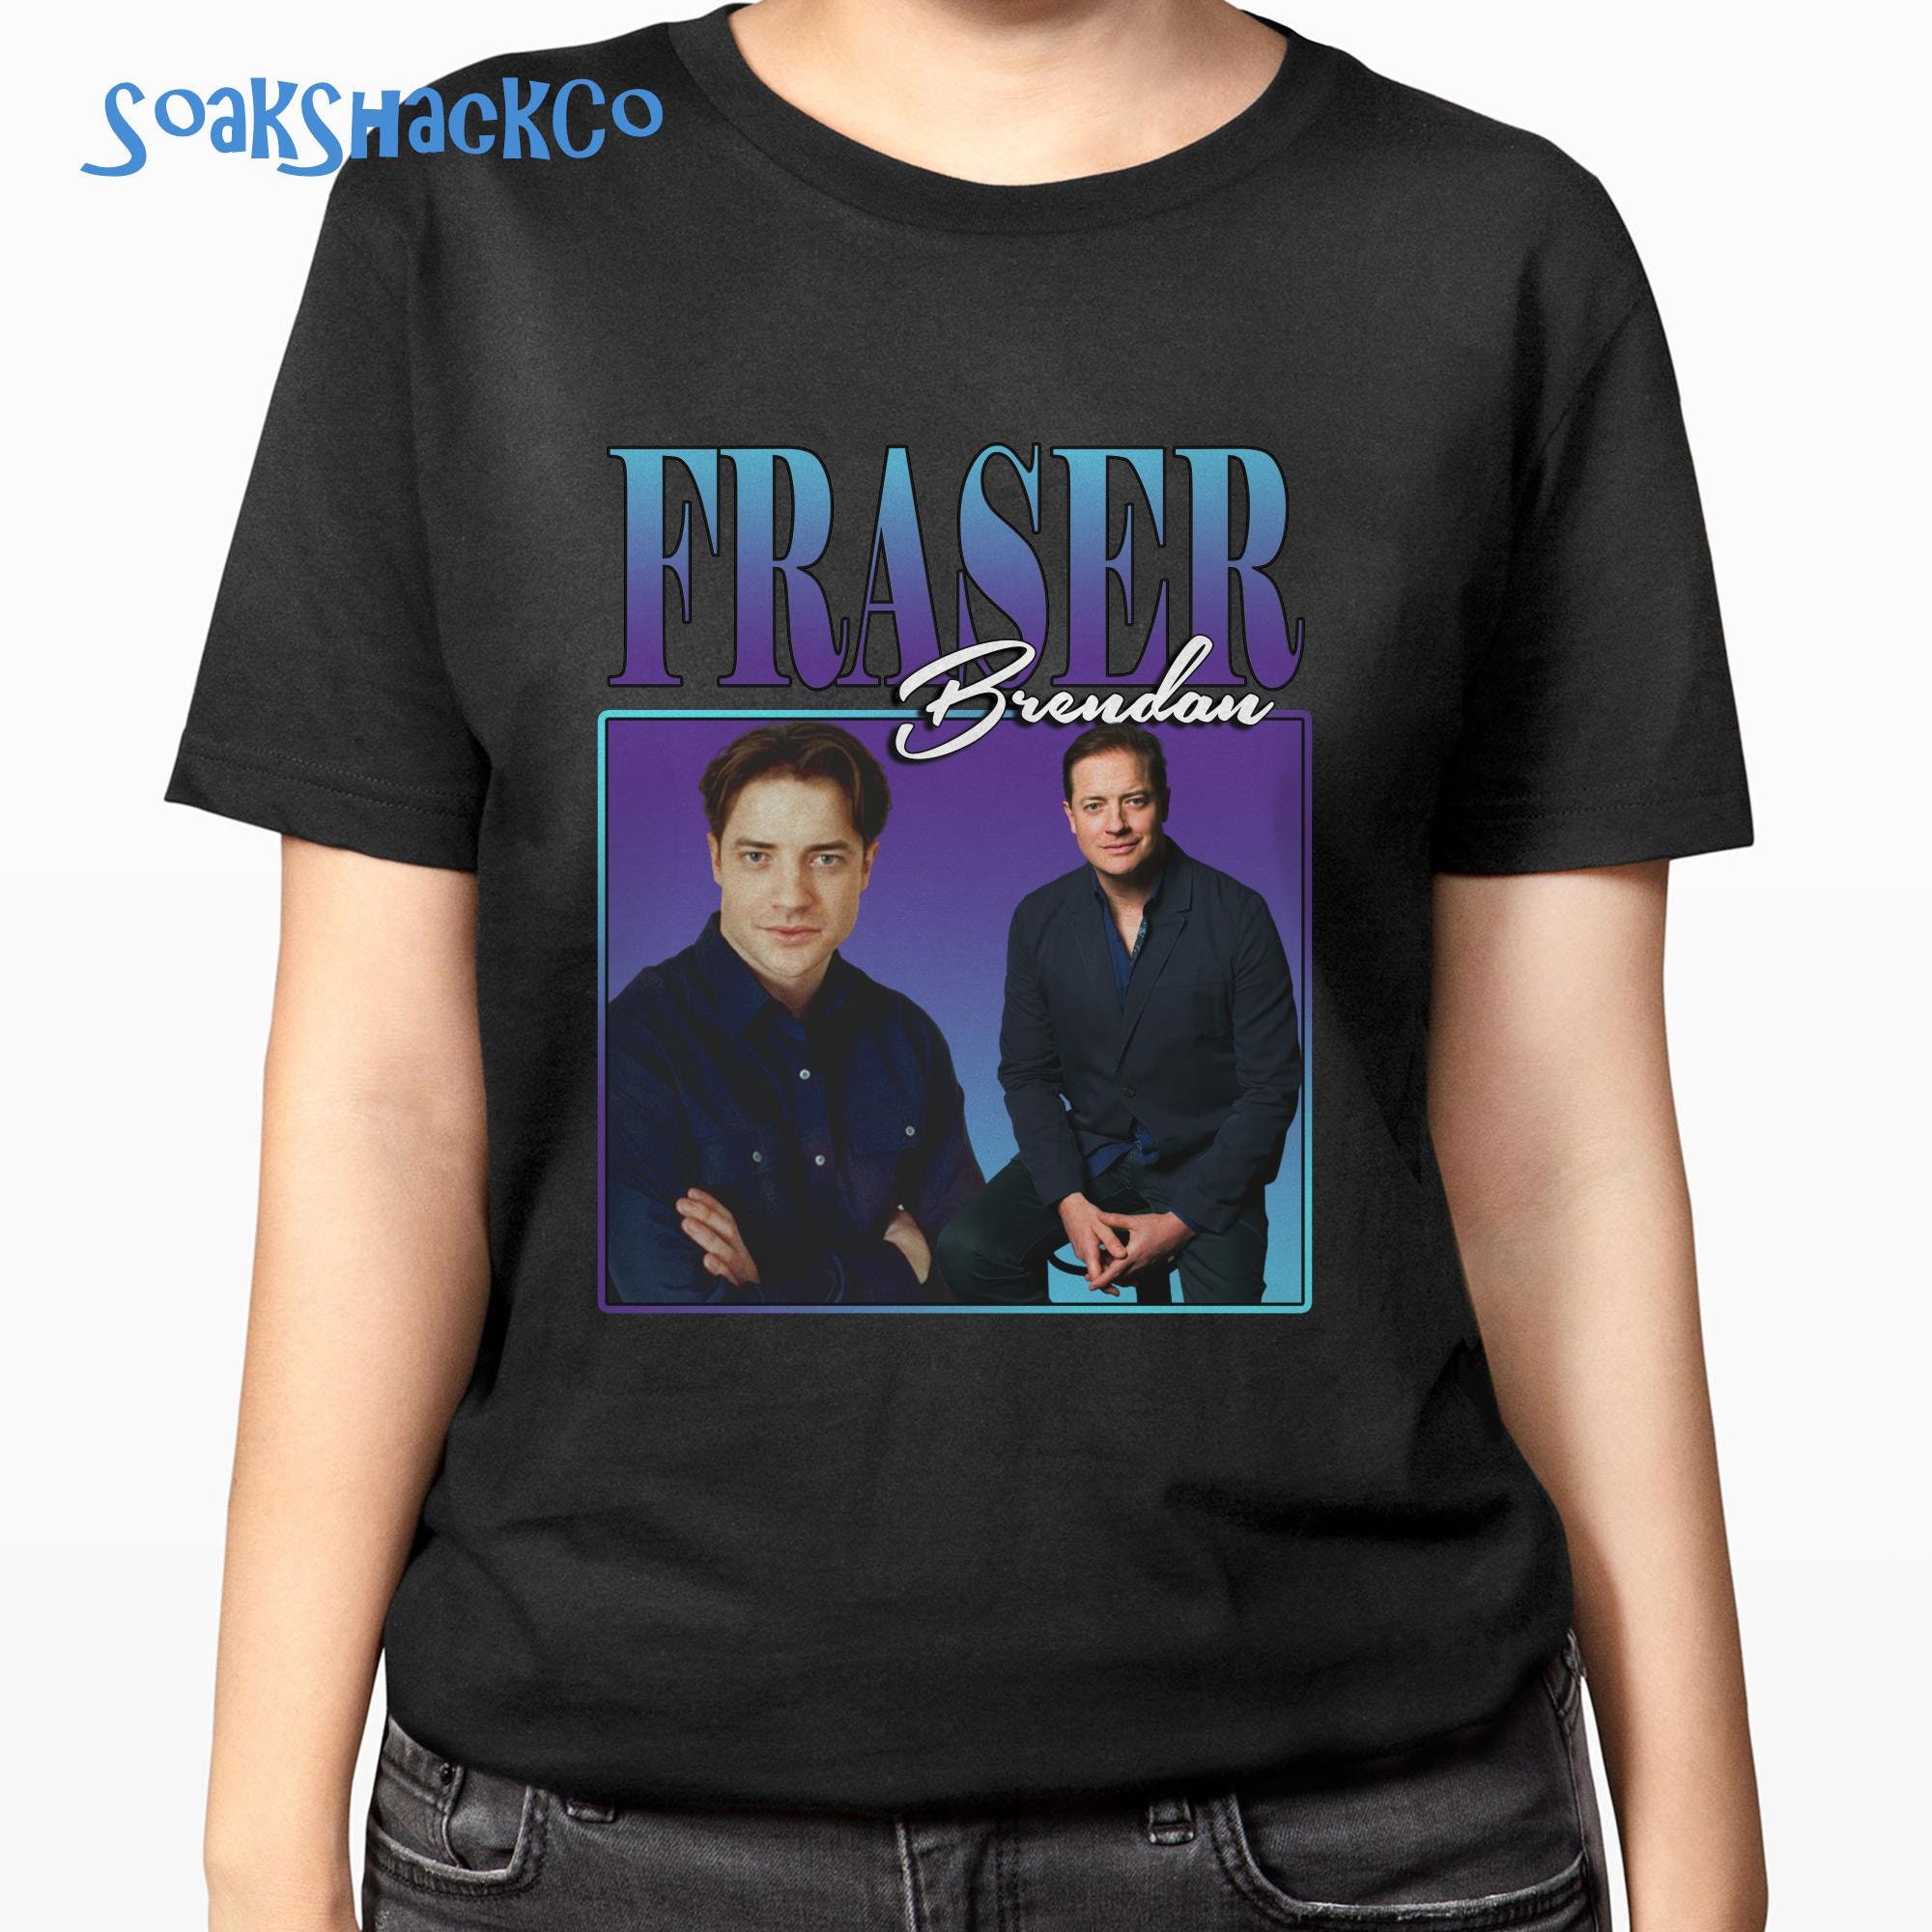 Brendan Fraser Homage Shirt, Brendan Fraser T-shirt